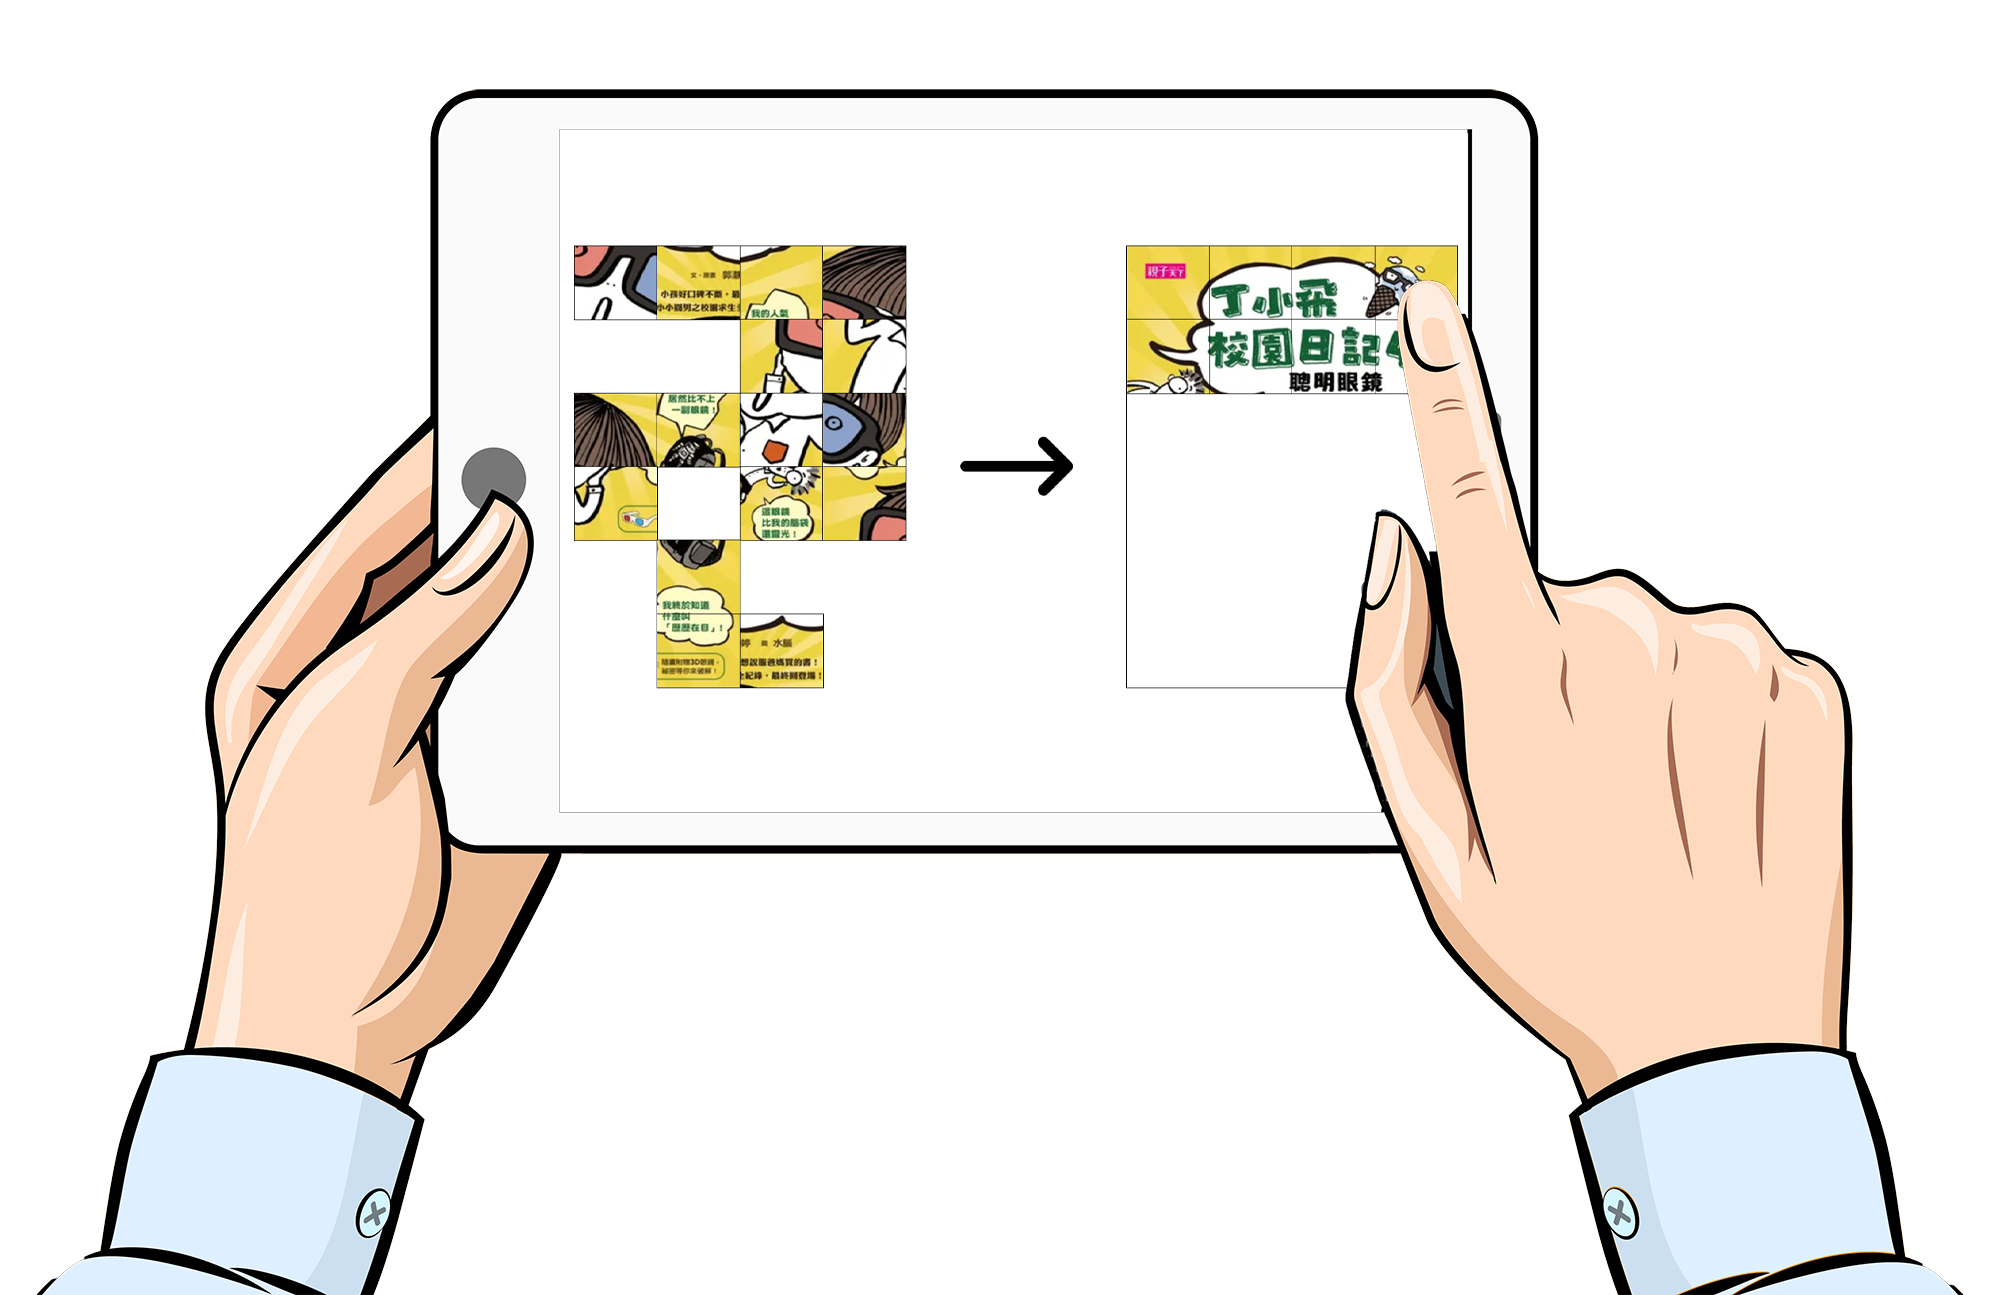 生生用平板軟體 - 平板圖書封面益智拼圖系統 - Pad Book Image Puzzle